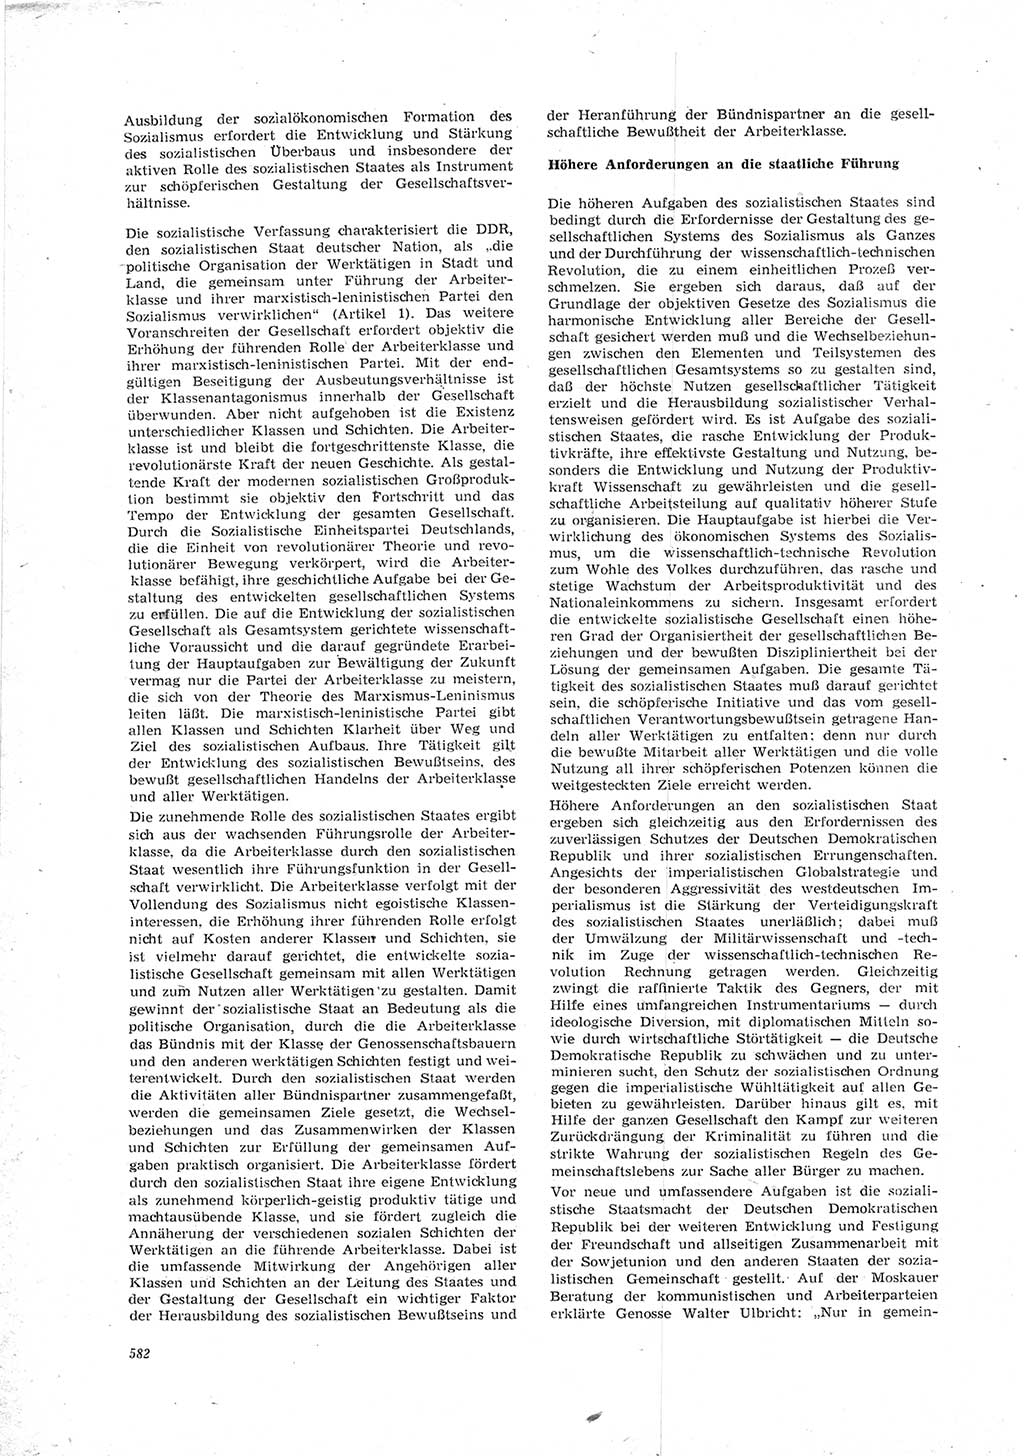 Neue Justiz (NJ), Zeitschrift für Recht und Rechtswissenschaft [Deutsche Demokratische Republik (DDR)], 23. Jahrgang 1969, Seite 582 (NJ DDR 1969, S. 582)